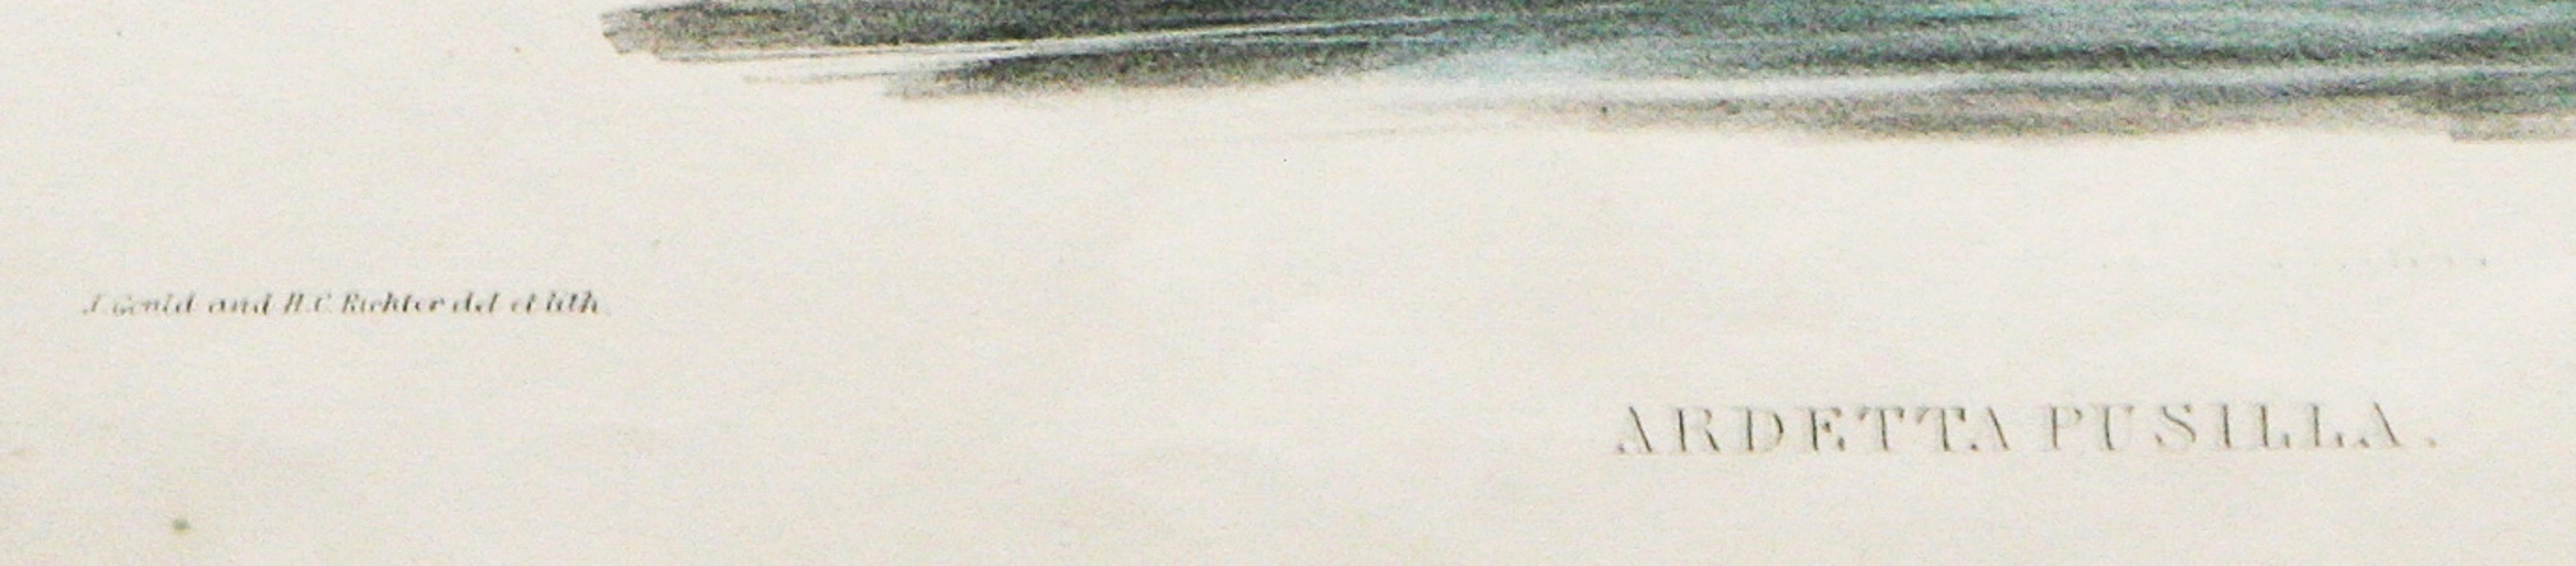       Ardetta Pusilla (Zwergdommel) ist eine handkolorierte Lithographie von John Gould und Henry C. Richter. Aus Birds of Australia 1849-1883 Vol. 6. Zeigt zwei Rohrdommeln, die sich am Schilf festhalten und ins Wasser schauen, während eine andere